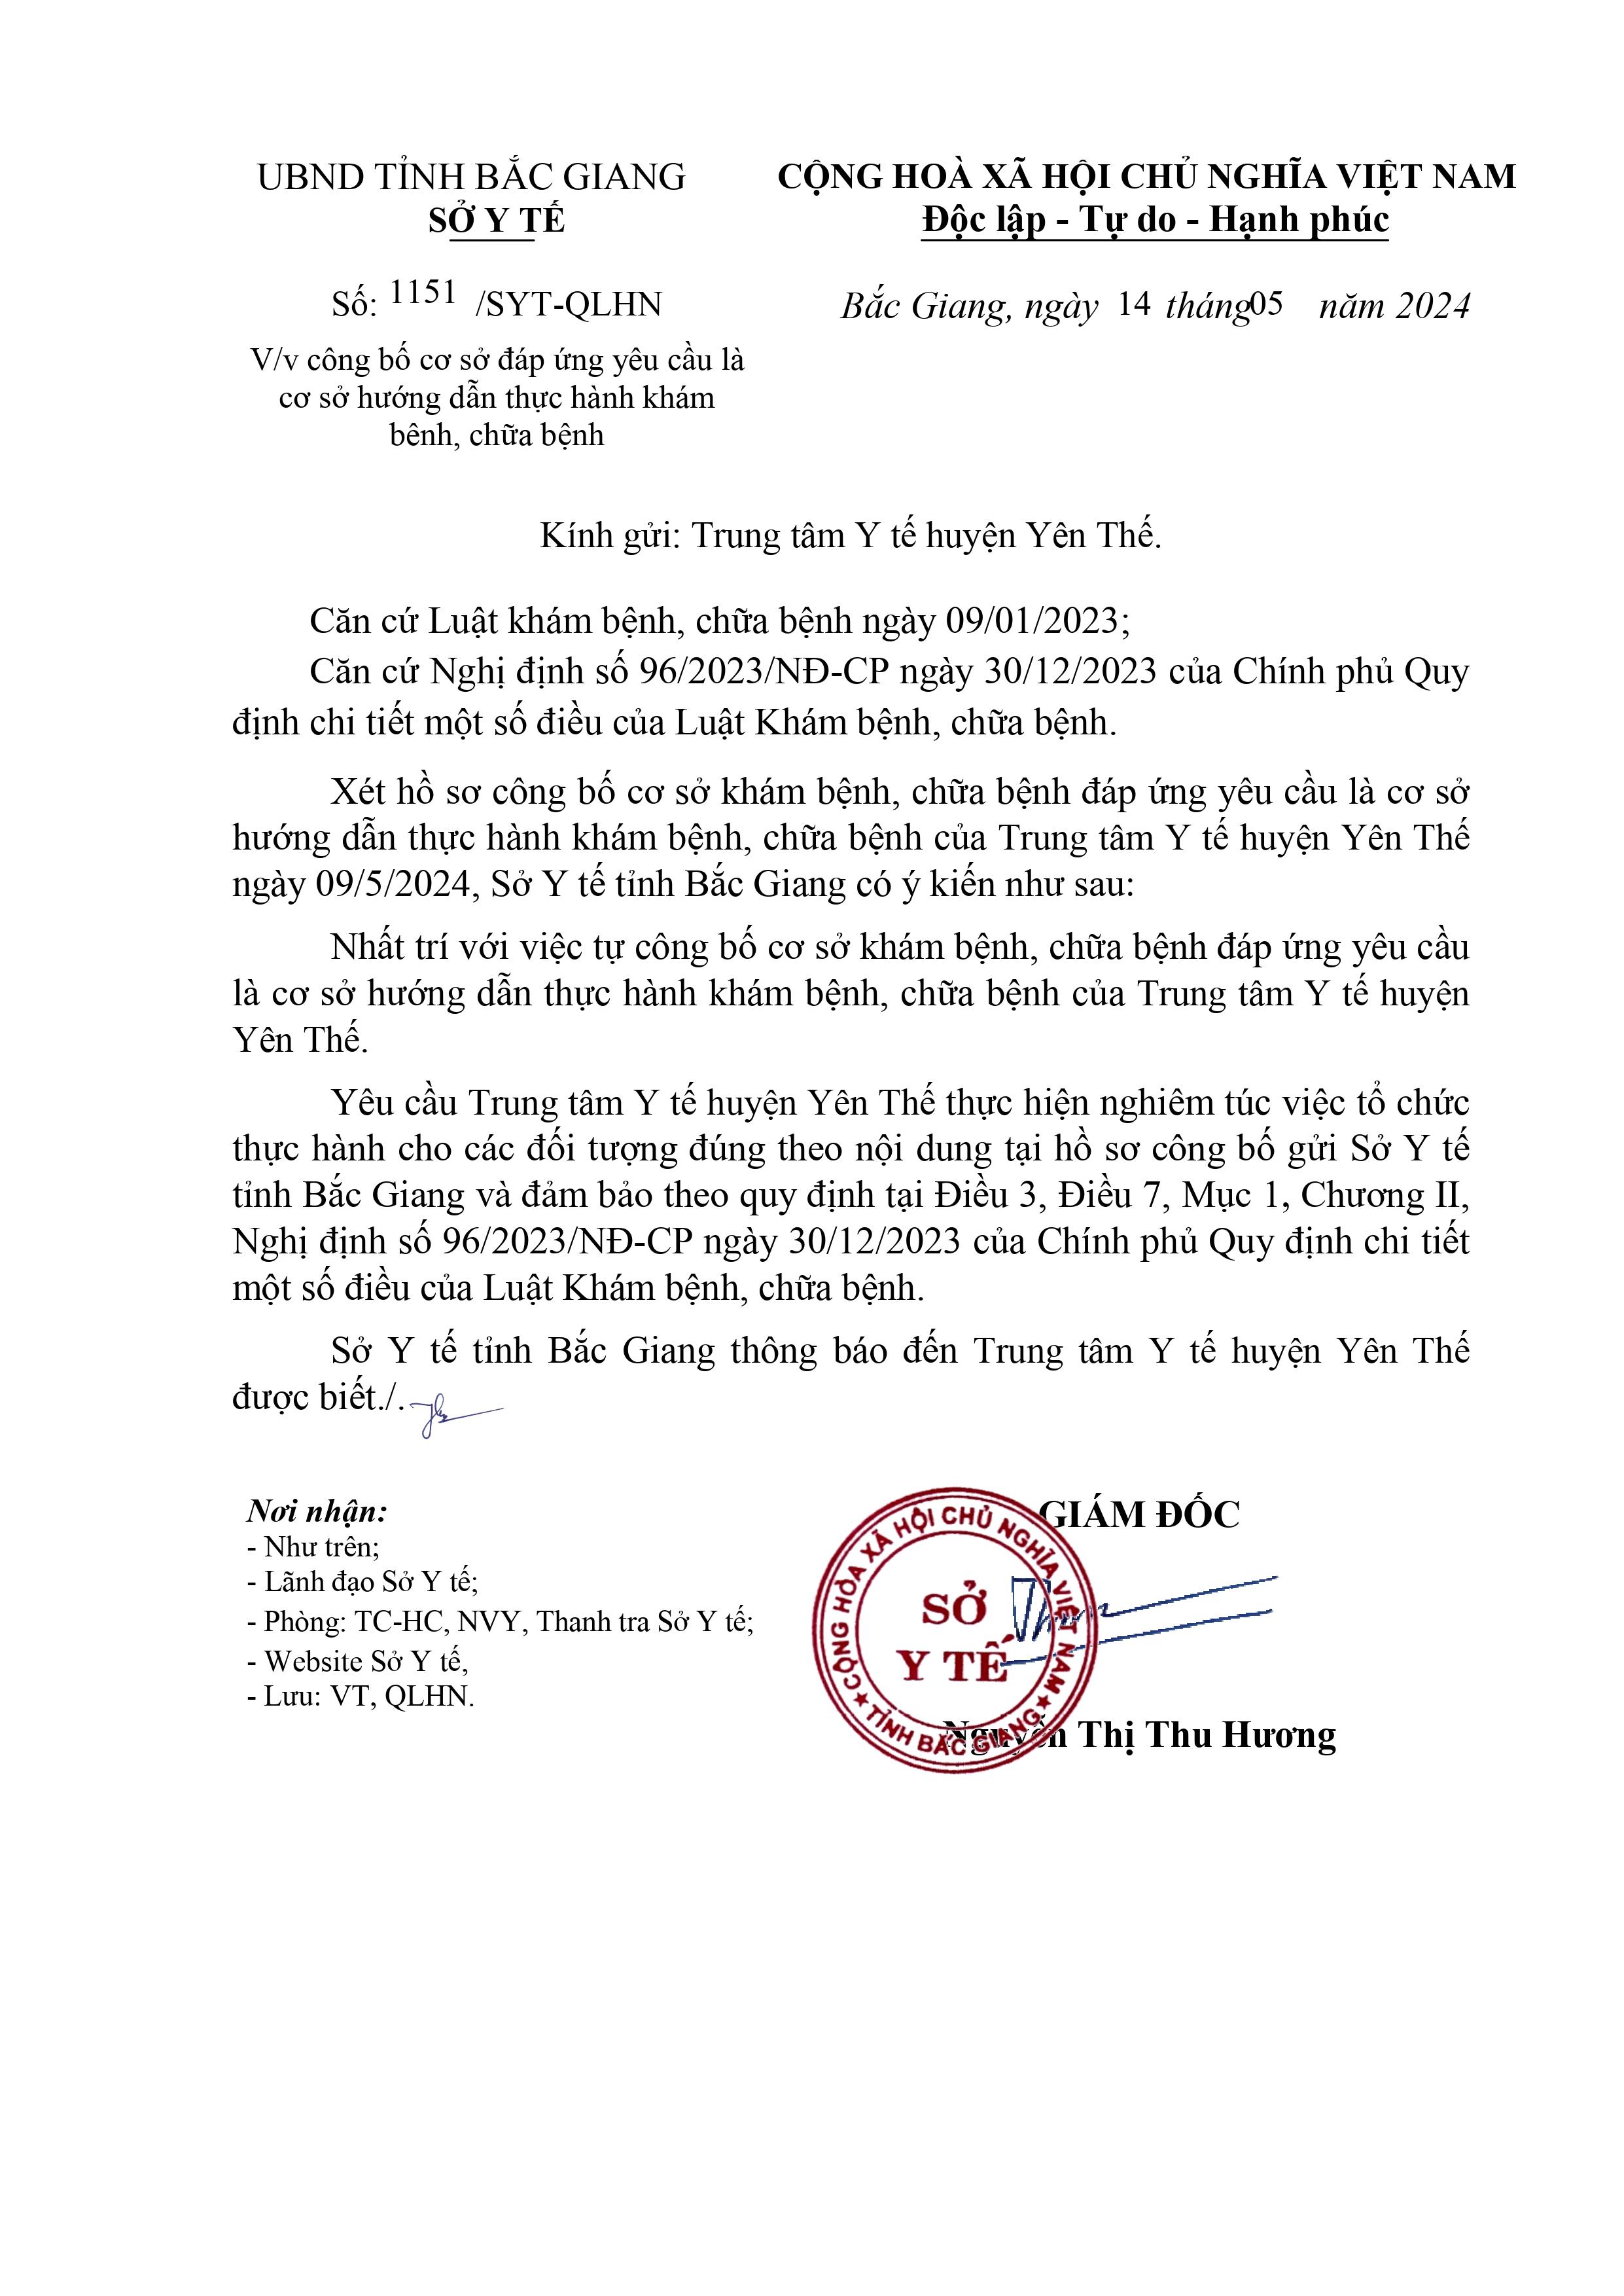 Trung tâm Y tế huyện Yên Thế được công bố là cơ sở hướng dẫn thực hành khám bệnh, chữa bệnh|https://trungtamytehuyenyenthe.vn/en_US/chi-tiet-tin-tuc/-/asset_publisher/M0UUAFstbTMq/content/trung-tam-y-te-huyen-yen-the-uoc-cong-bo-la-co-so-huong-dan-thuc-hanh-kham-benh-chua-benh